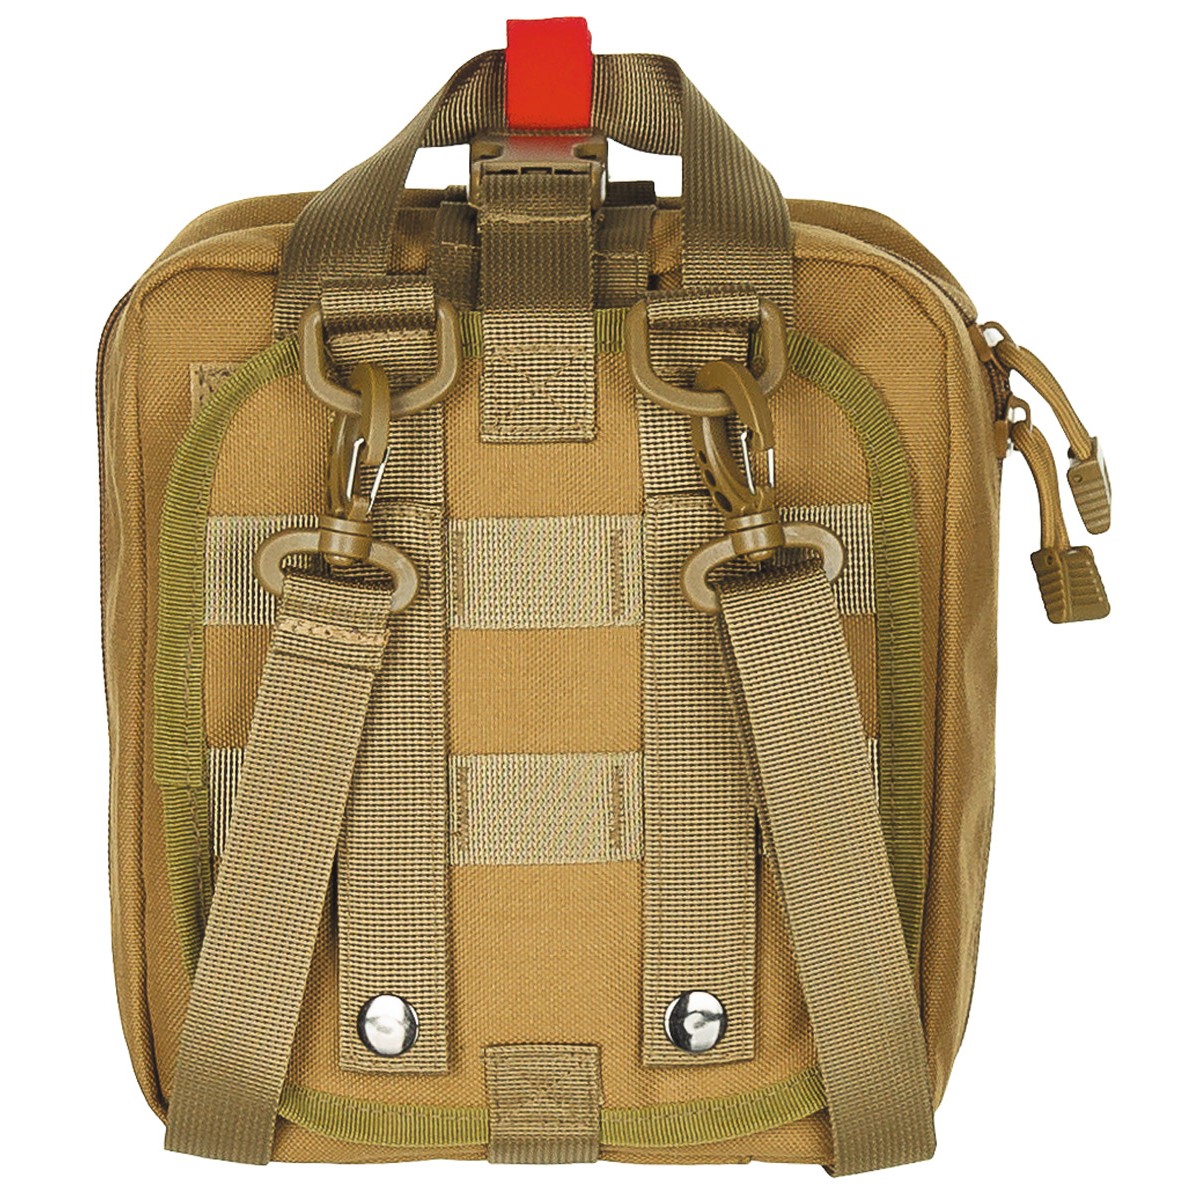 MFH tactical shoulder bag 5l, Molle, coyote tan - Total-Survival